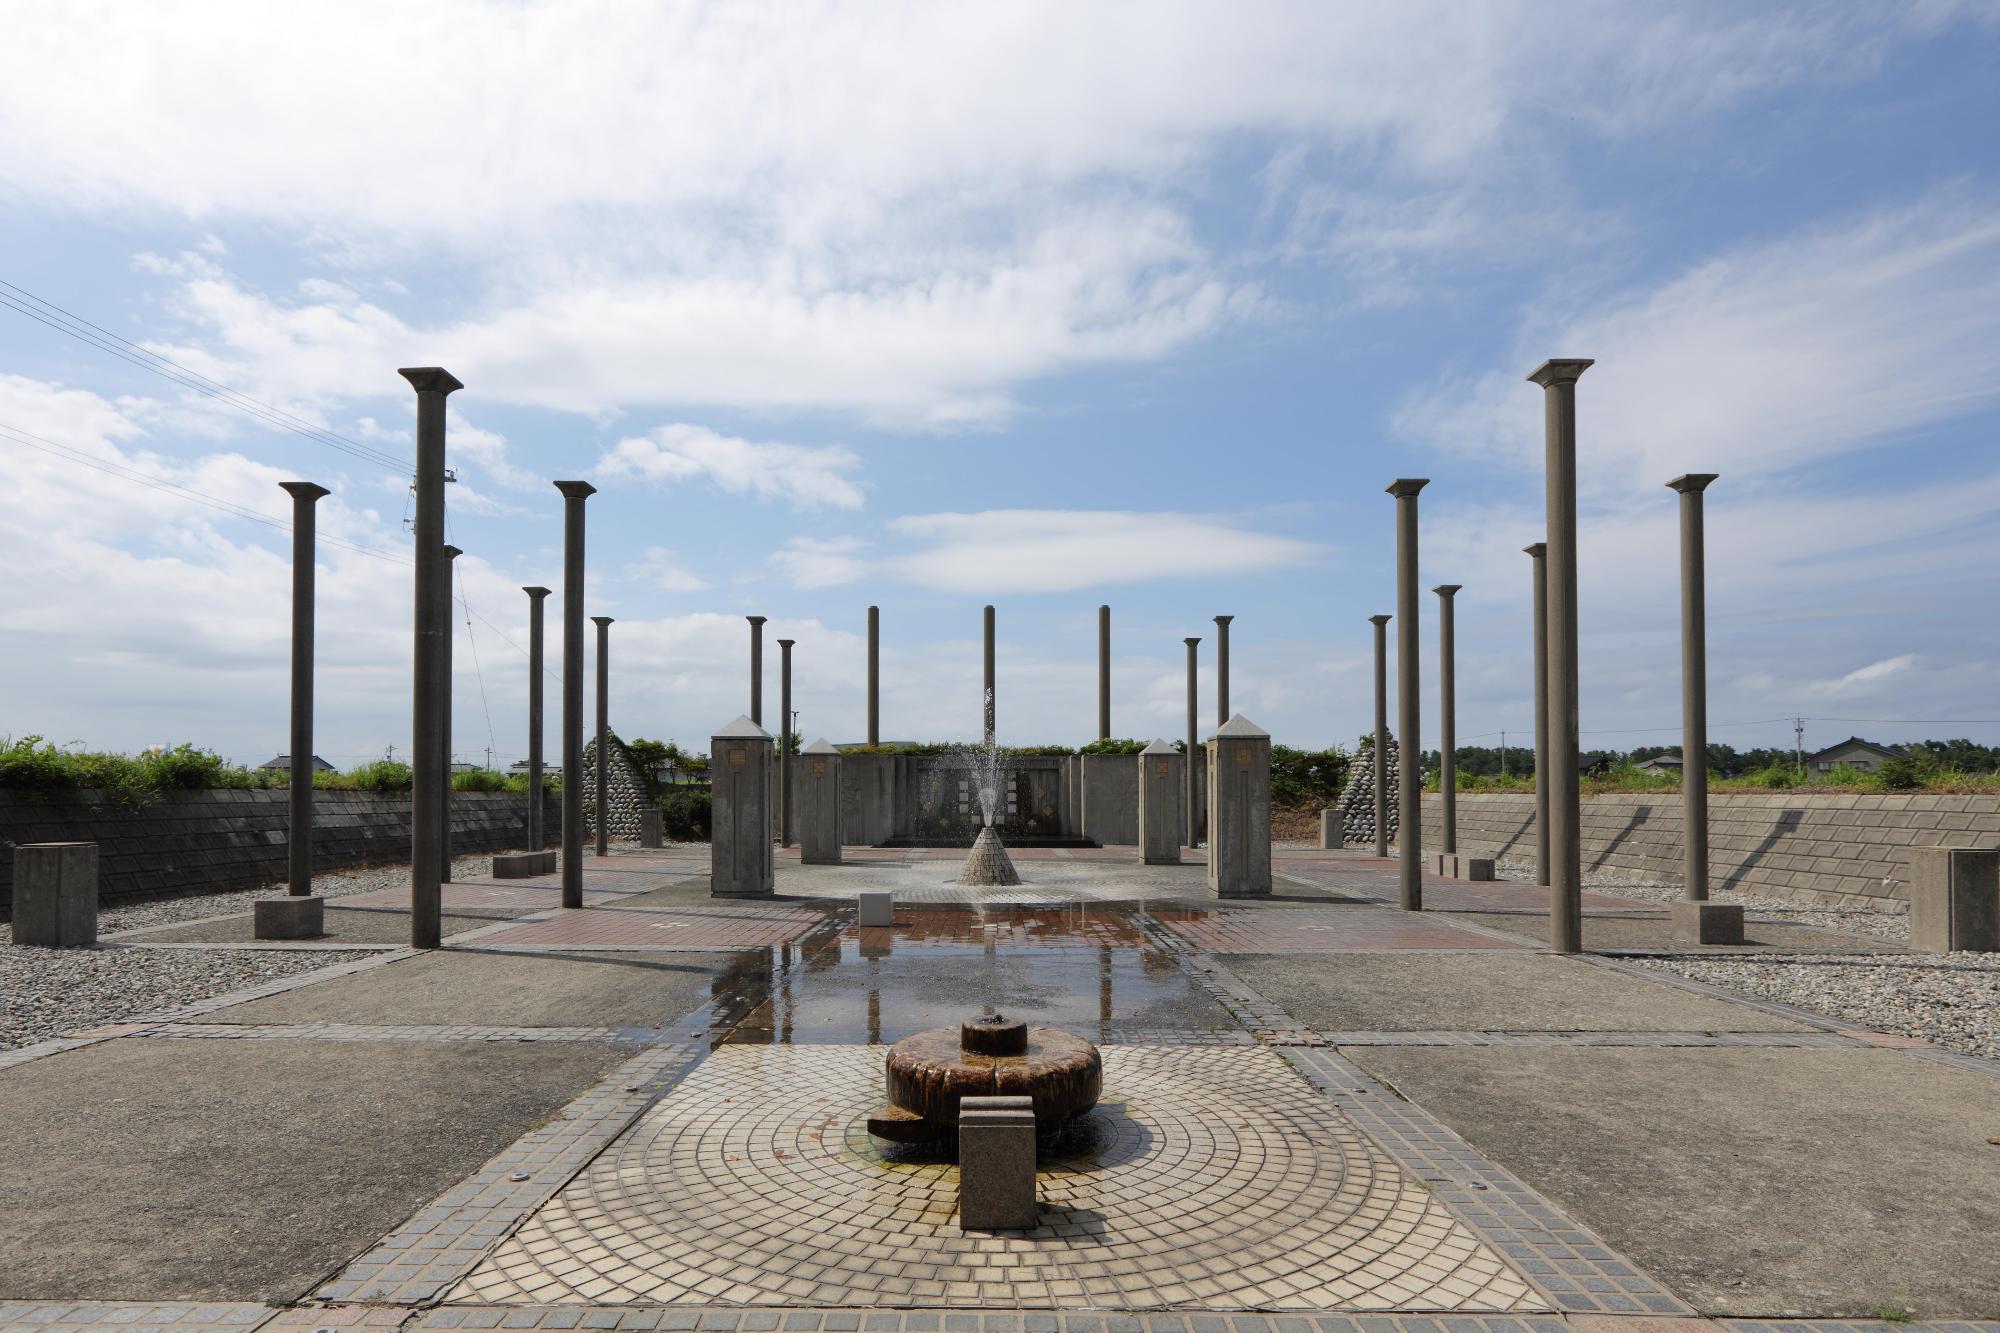 たくさんの柱が立ち並ぶ古代の神殿風の造りになっている扇状地湧水公苑の写真